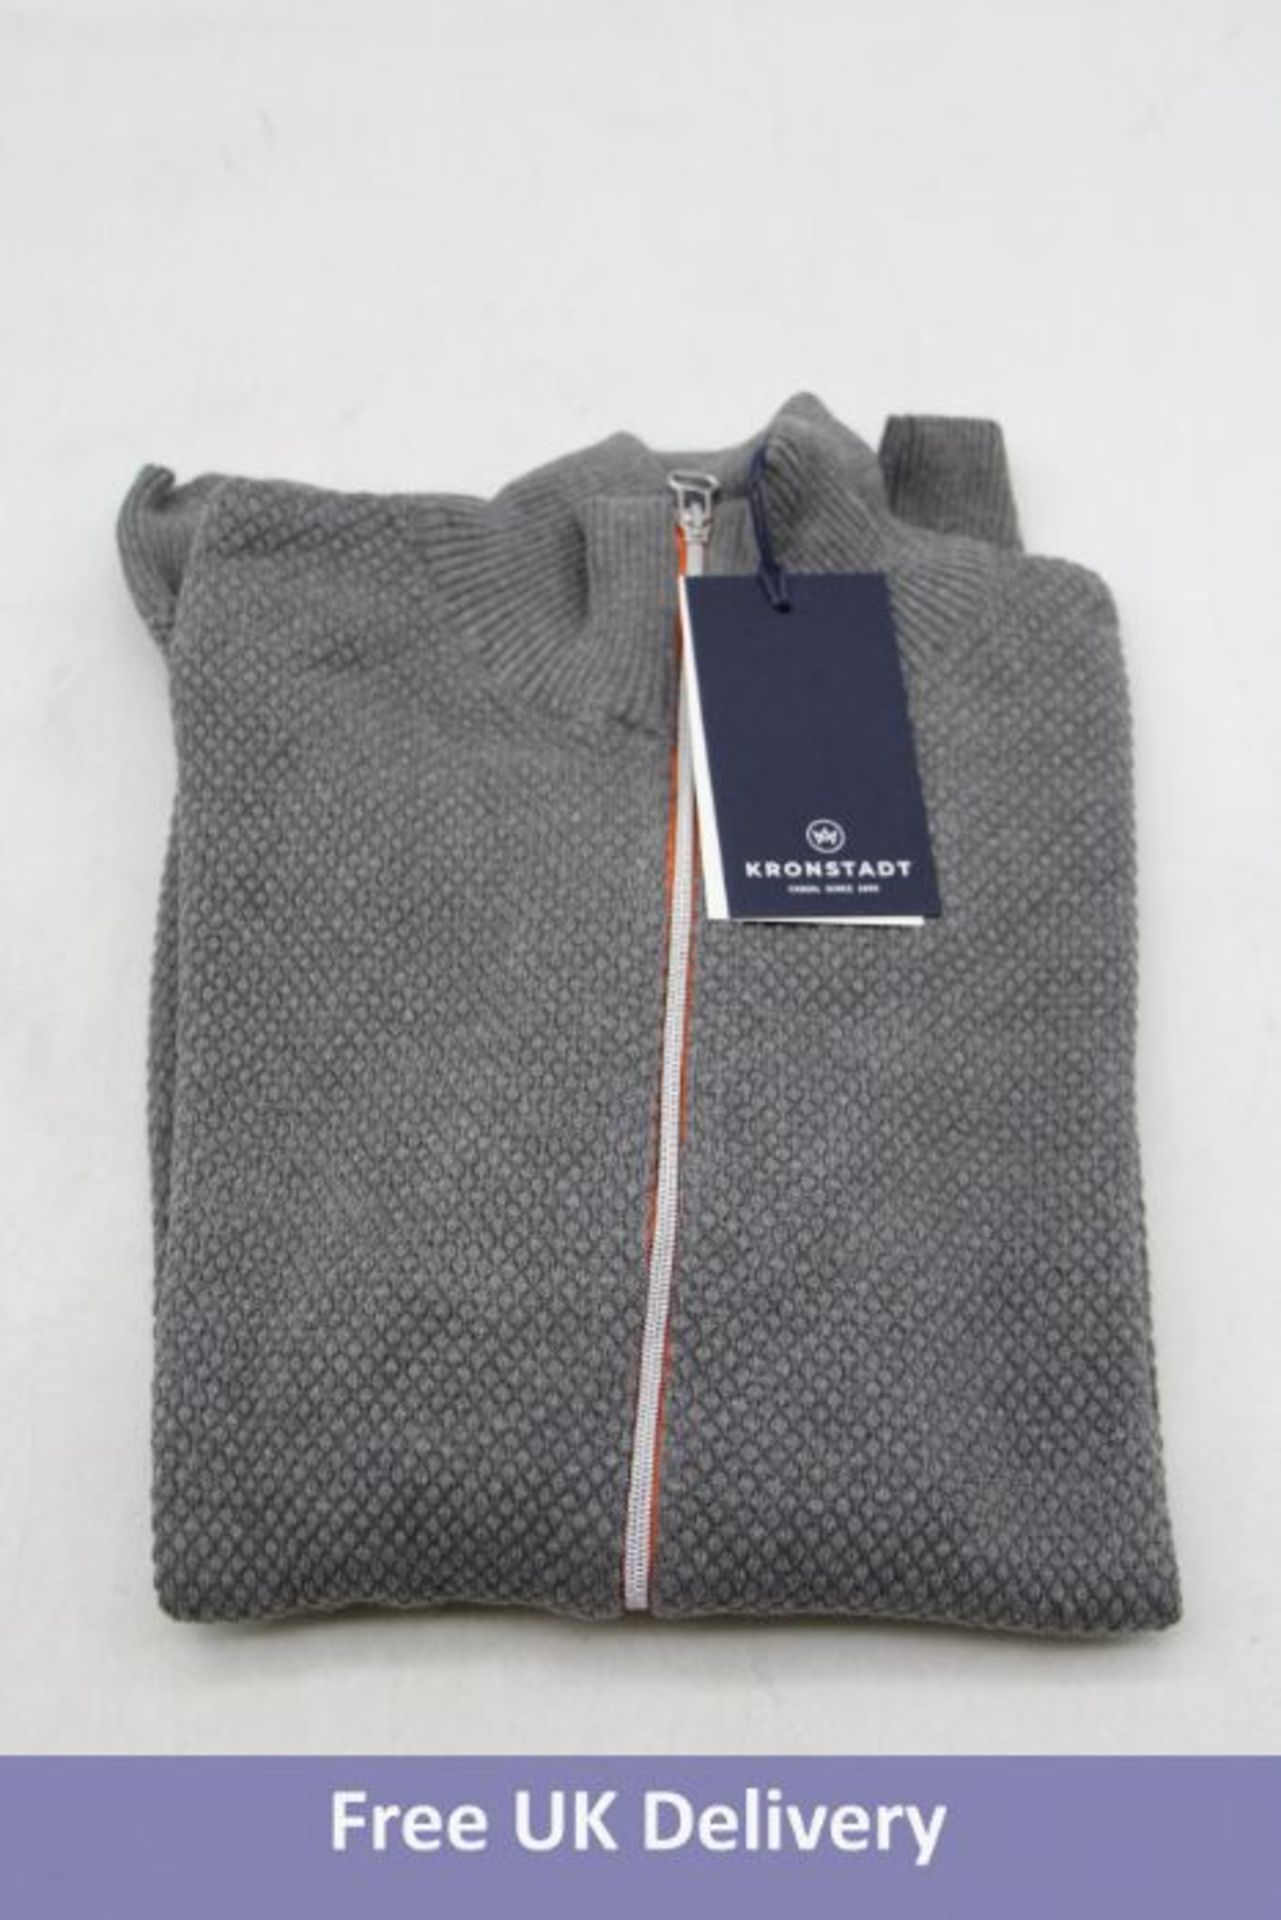 Six Kronstadt Erlk Zip Cardigan/Sweater, Grey/Orange Zip, Size M - Image 4 of 6